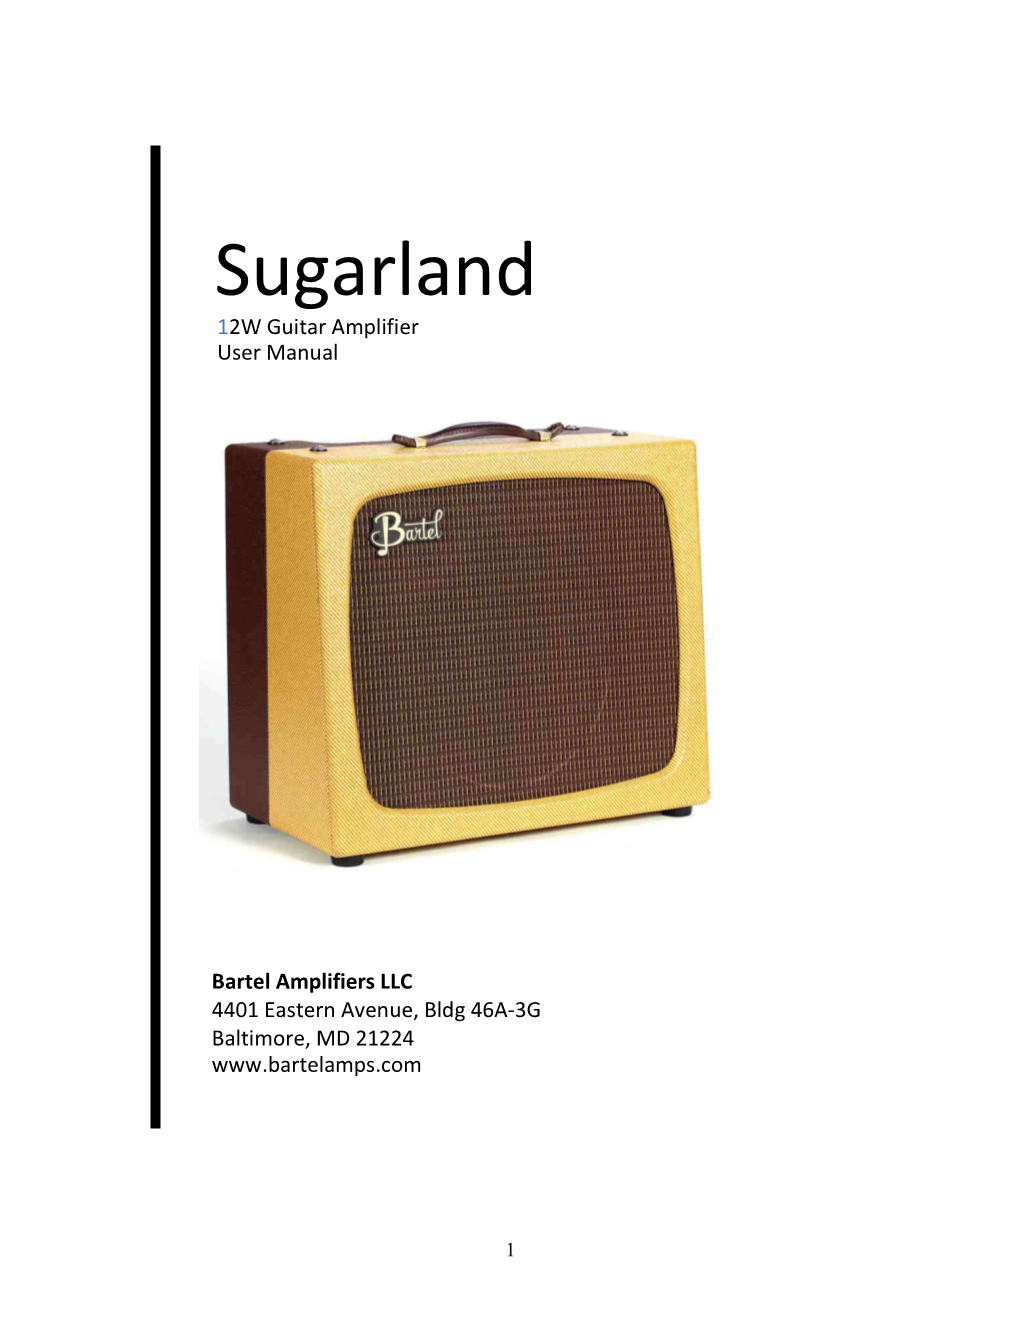 Sugarland 12W Guitar Amplifier User Manual